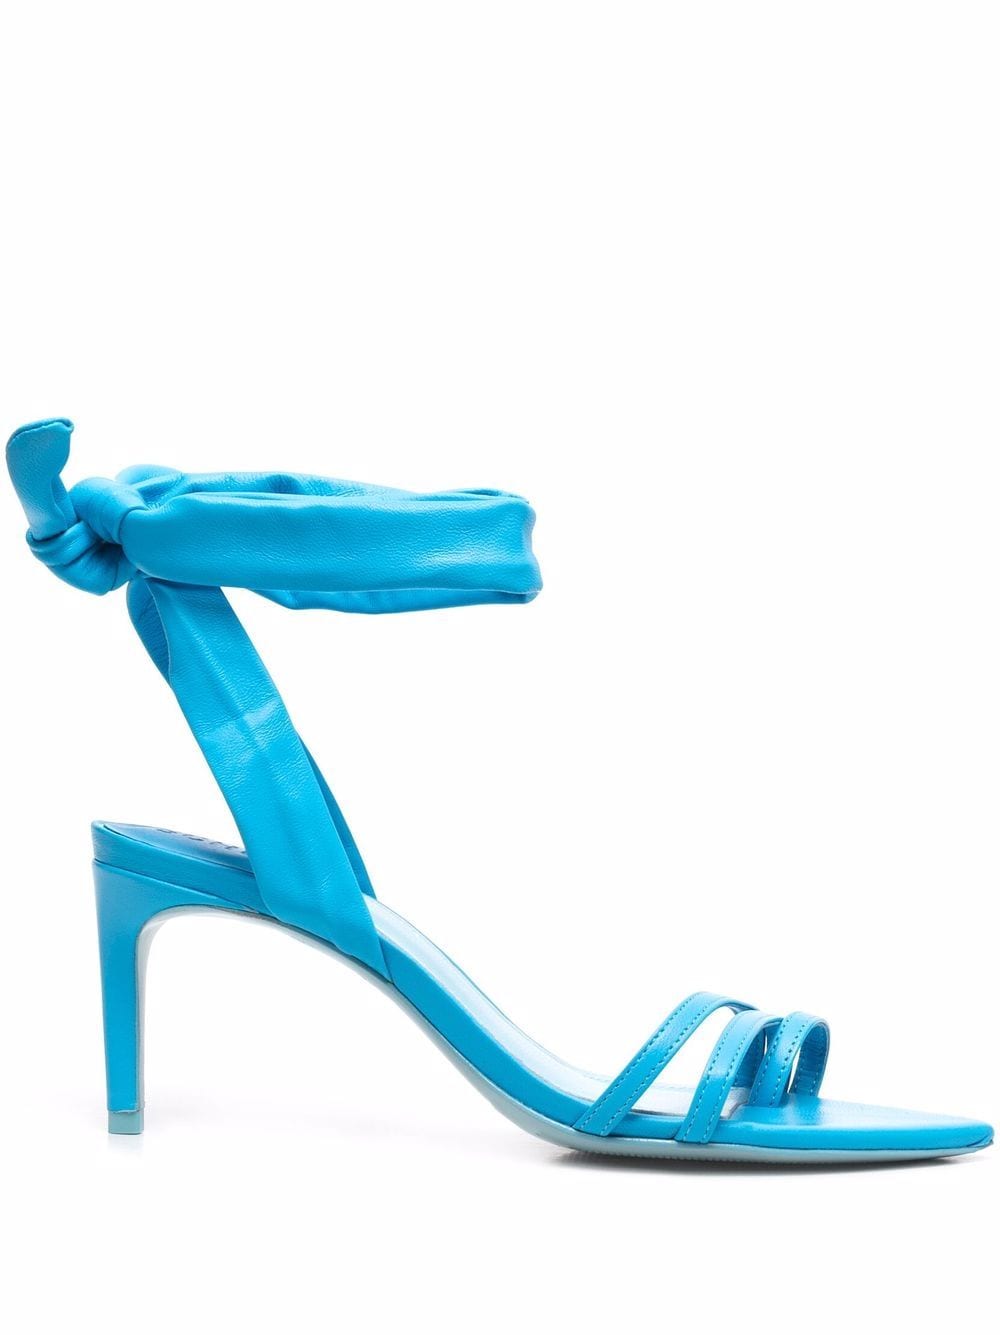 Schutz open-toe heeled sandals - Blue von Schutz